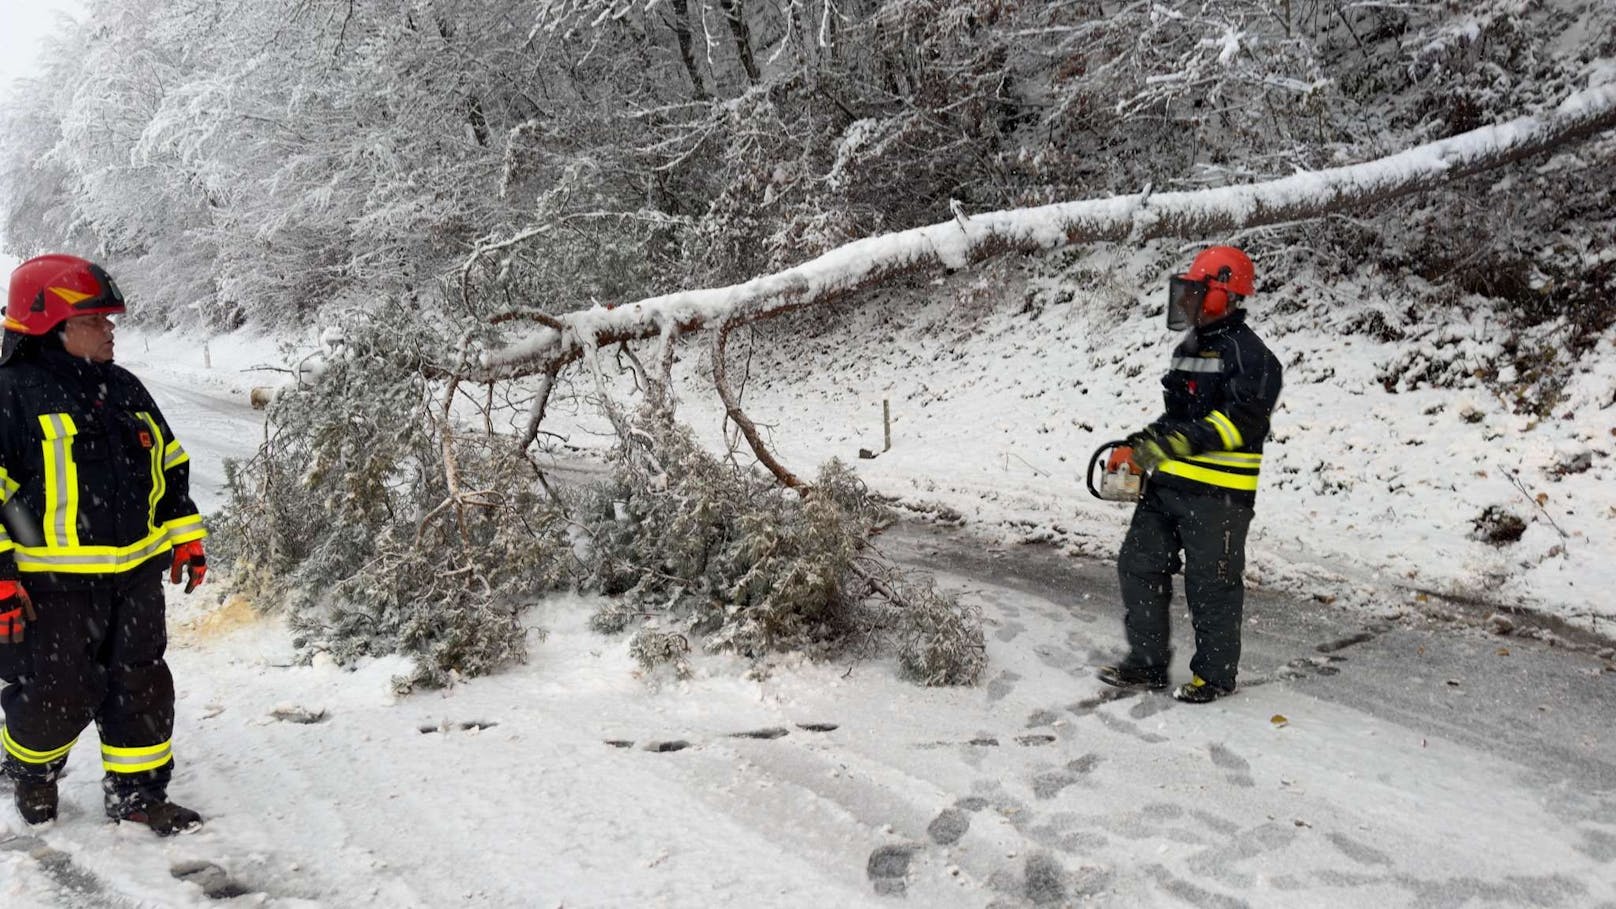 Zahlreiche Einsätze wegen umgestürzter Bäume und hängengebliebenen Fahrzeugen beschäftigen die Feuerwehren in Niederösterreich. Unteranderem auch die Feuerwehr Neustadtl im Bezirk Amstetten. Unzählige Einsätze beschäftigen auch diese unteranderem auf der L91.